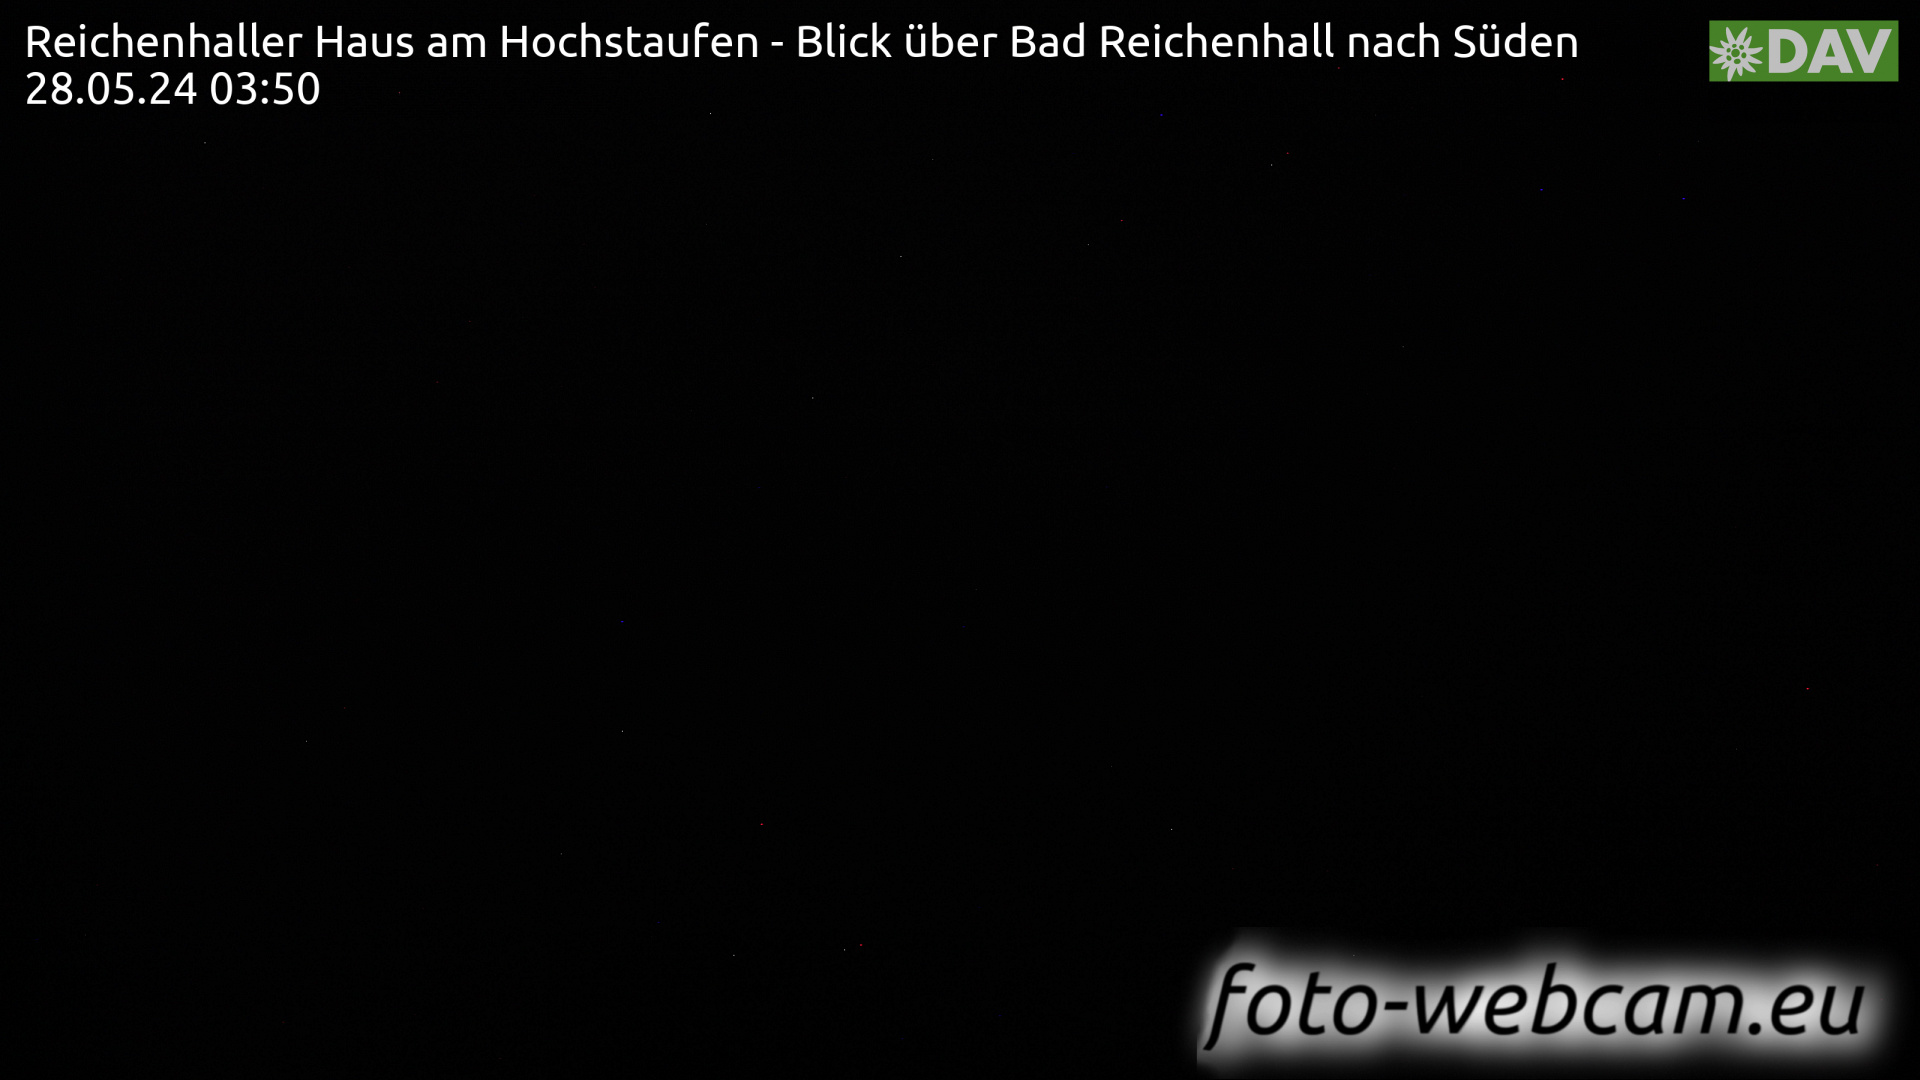 Bad Reichenhall Lør. 03:55